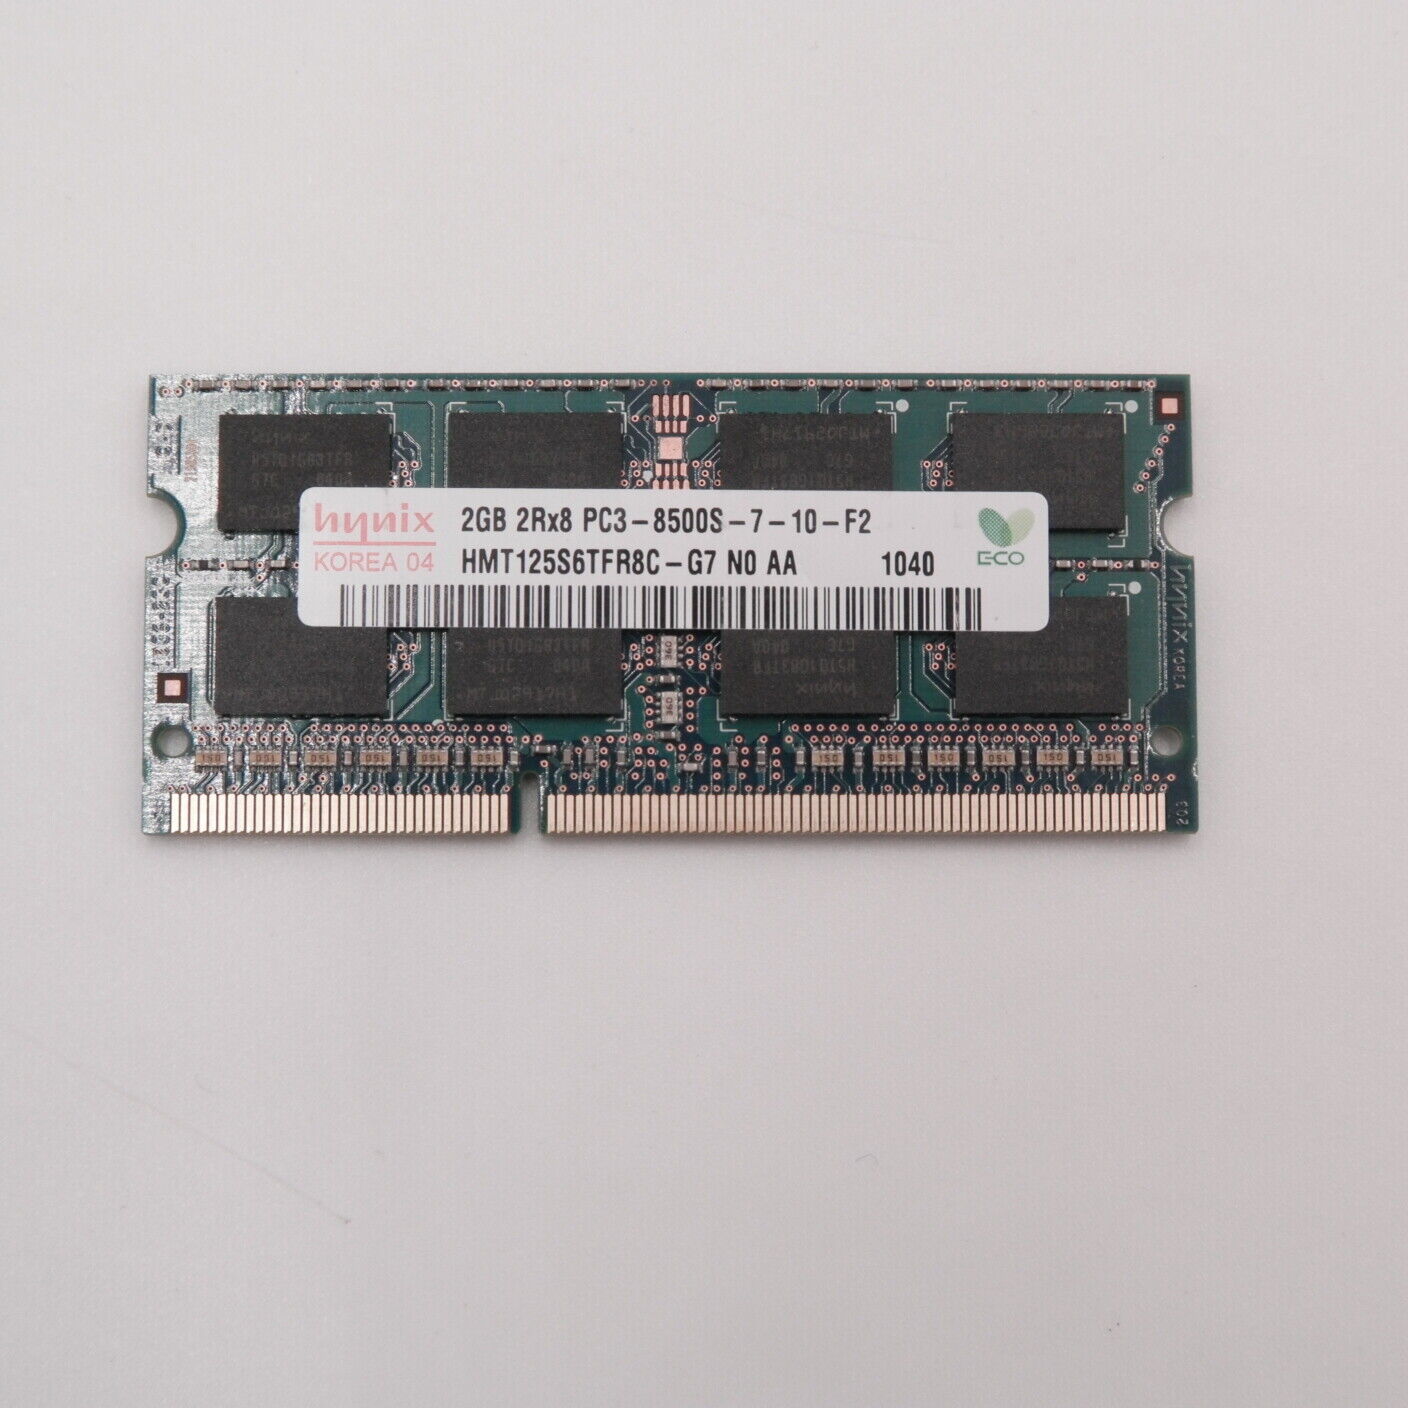 Micron 2GB DDR3 Laptop Memory 1RX8 PC3-8500S 1066MHz (A)